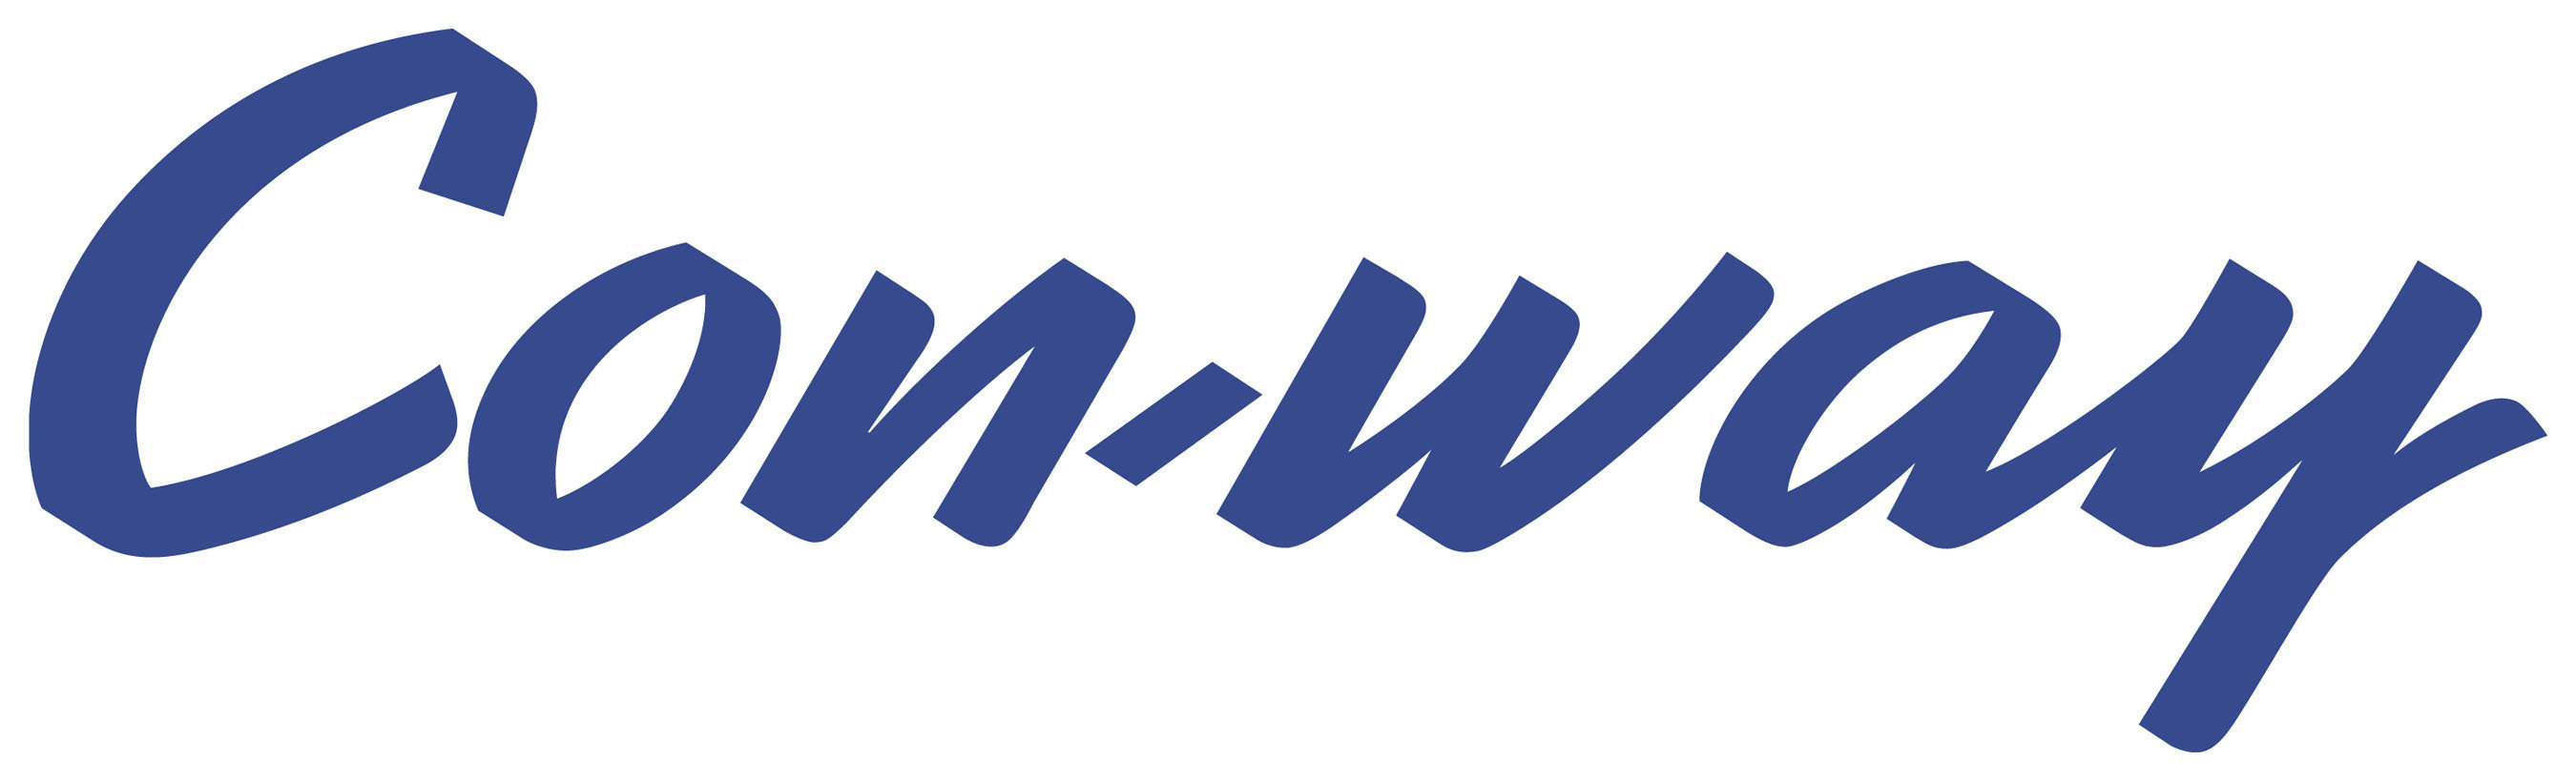 Con-way Inc. logo. (PRNewsFoto/Con-way Inc.) (PRNewsFoto/)